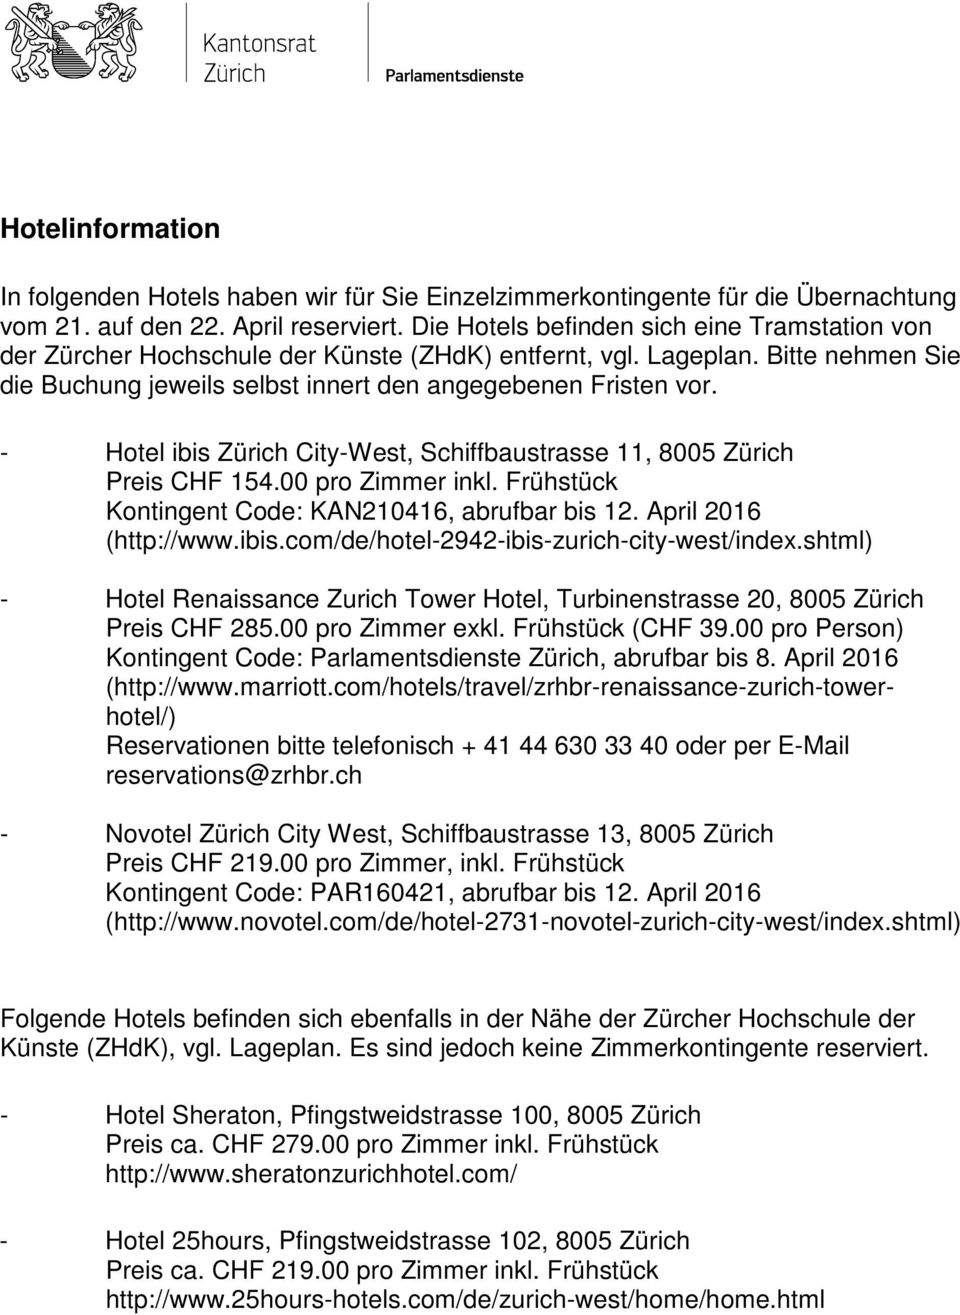 - Hotel ibis Zürich City-West, Schiffbaustrasse 11, 8005 Zürich Preis CHF 154.00 pro Zimmer inkl. Frühstück Kontingent Code: KAN210416, abrufbar bis 12. April 2016 (http://www.ibis.com/de/hotel-2942-ibis-zurich-city-west/index.